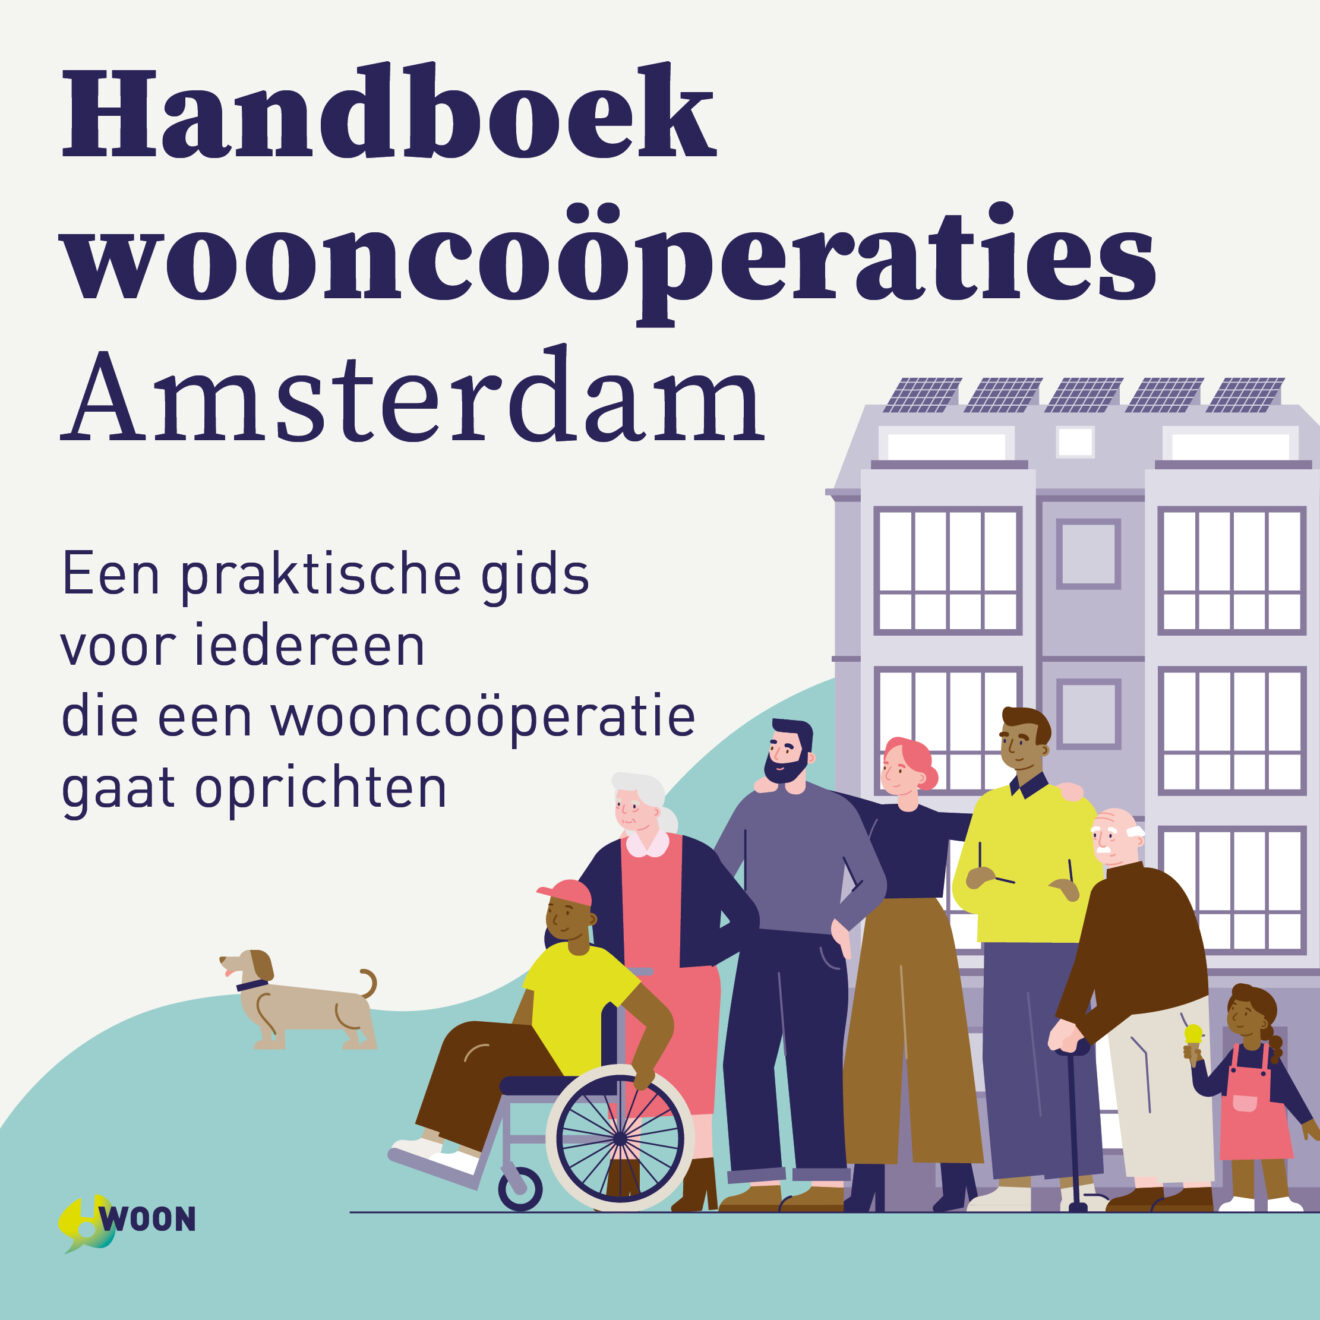 Handboek wooncoöperaties Amsterdam